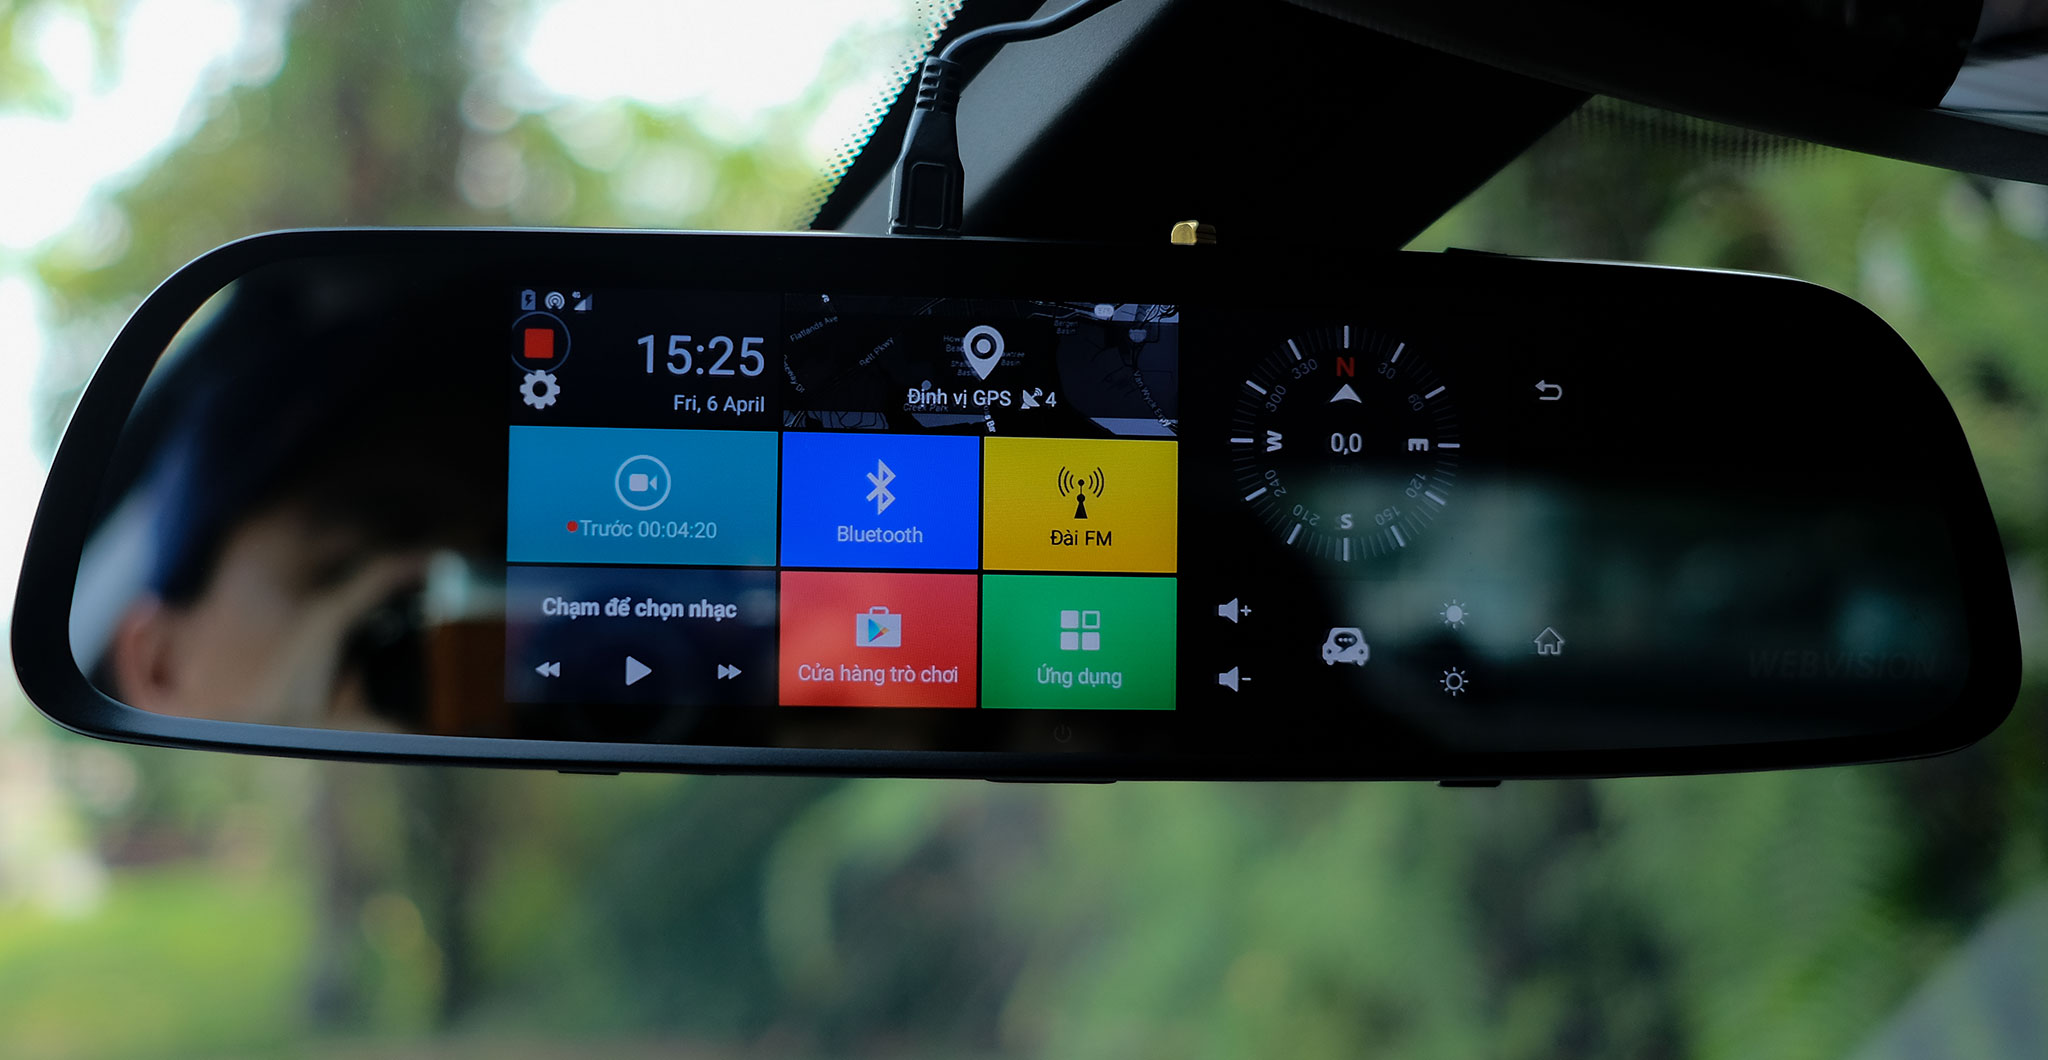 Trên tay Webvision M39: Camera hành trình gắn gương, chạy Android, phát wifi, báo lệch làn...